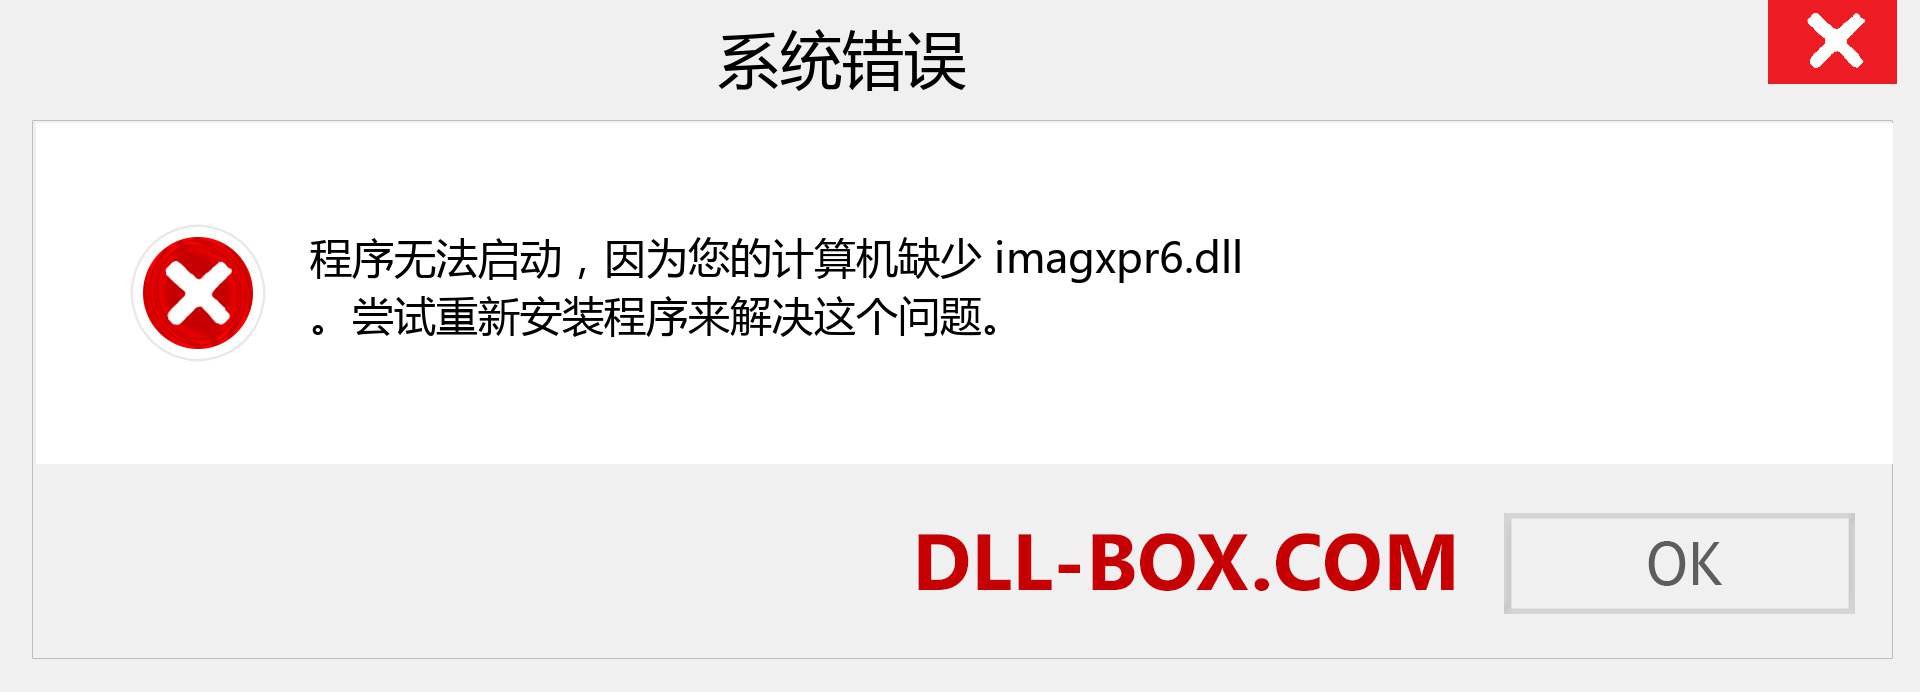 imagxpr6.dll 文件丢失？。 适用于 Windows 7、8、10 的下载 - 修复 Windows、照片、图像上的 imagxpr6 dll 丢失错误